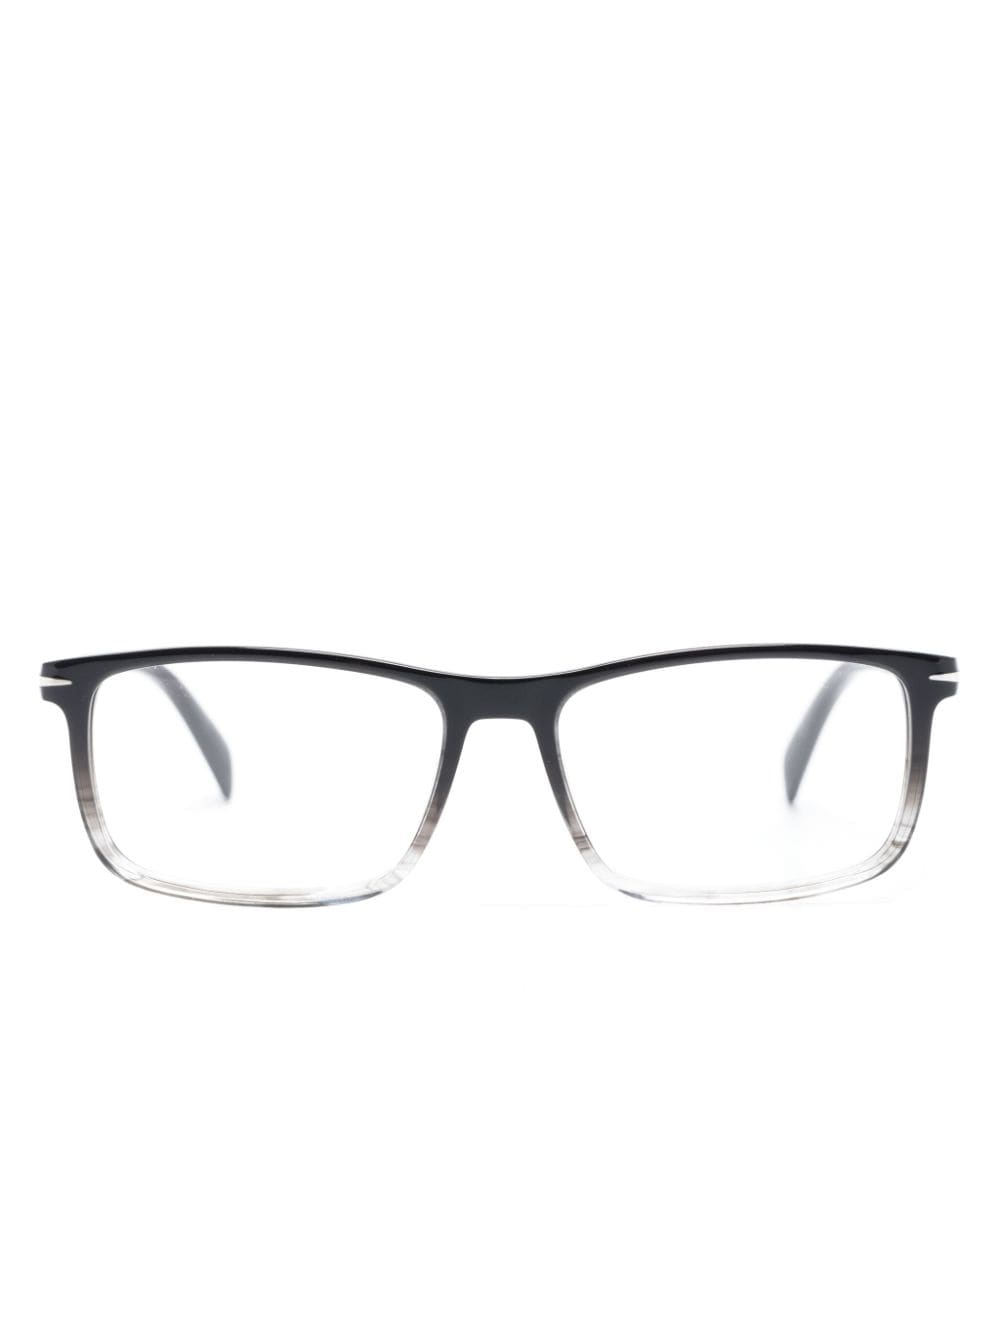 Eyewear by David Beckham two-tone rectangle-frame glasses - Black von Eyewear by David Beckham